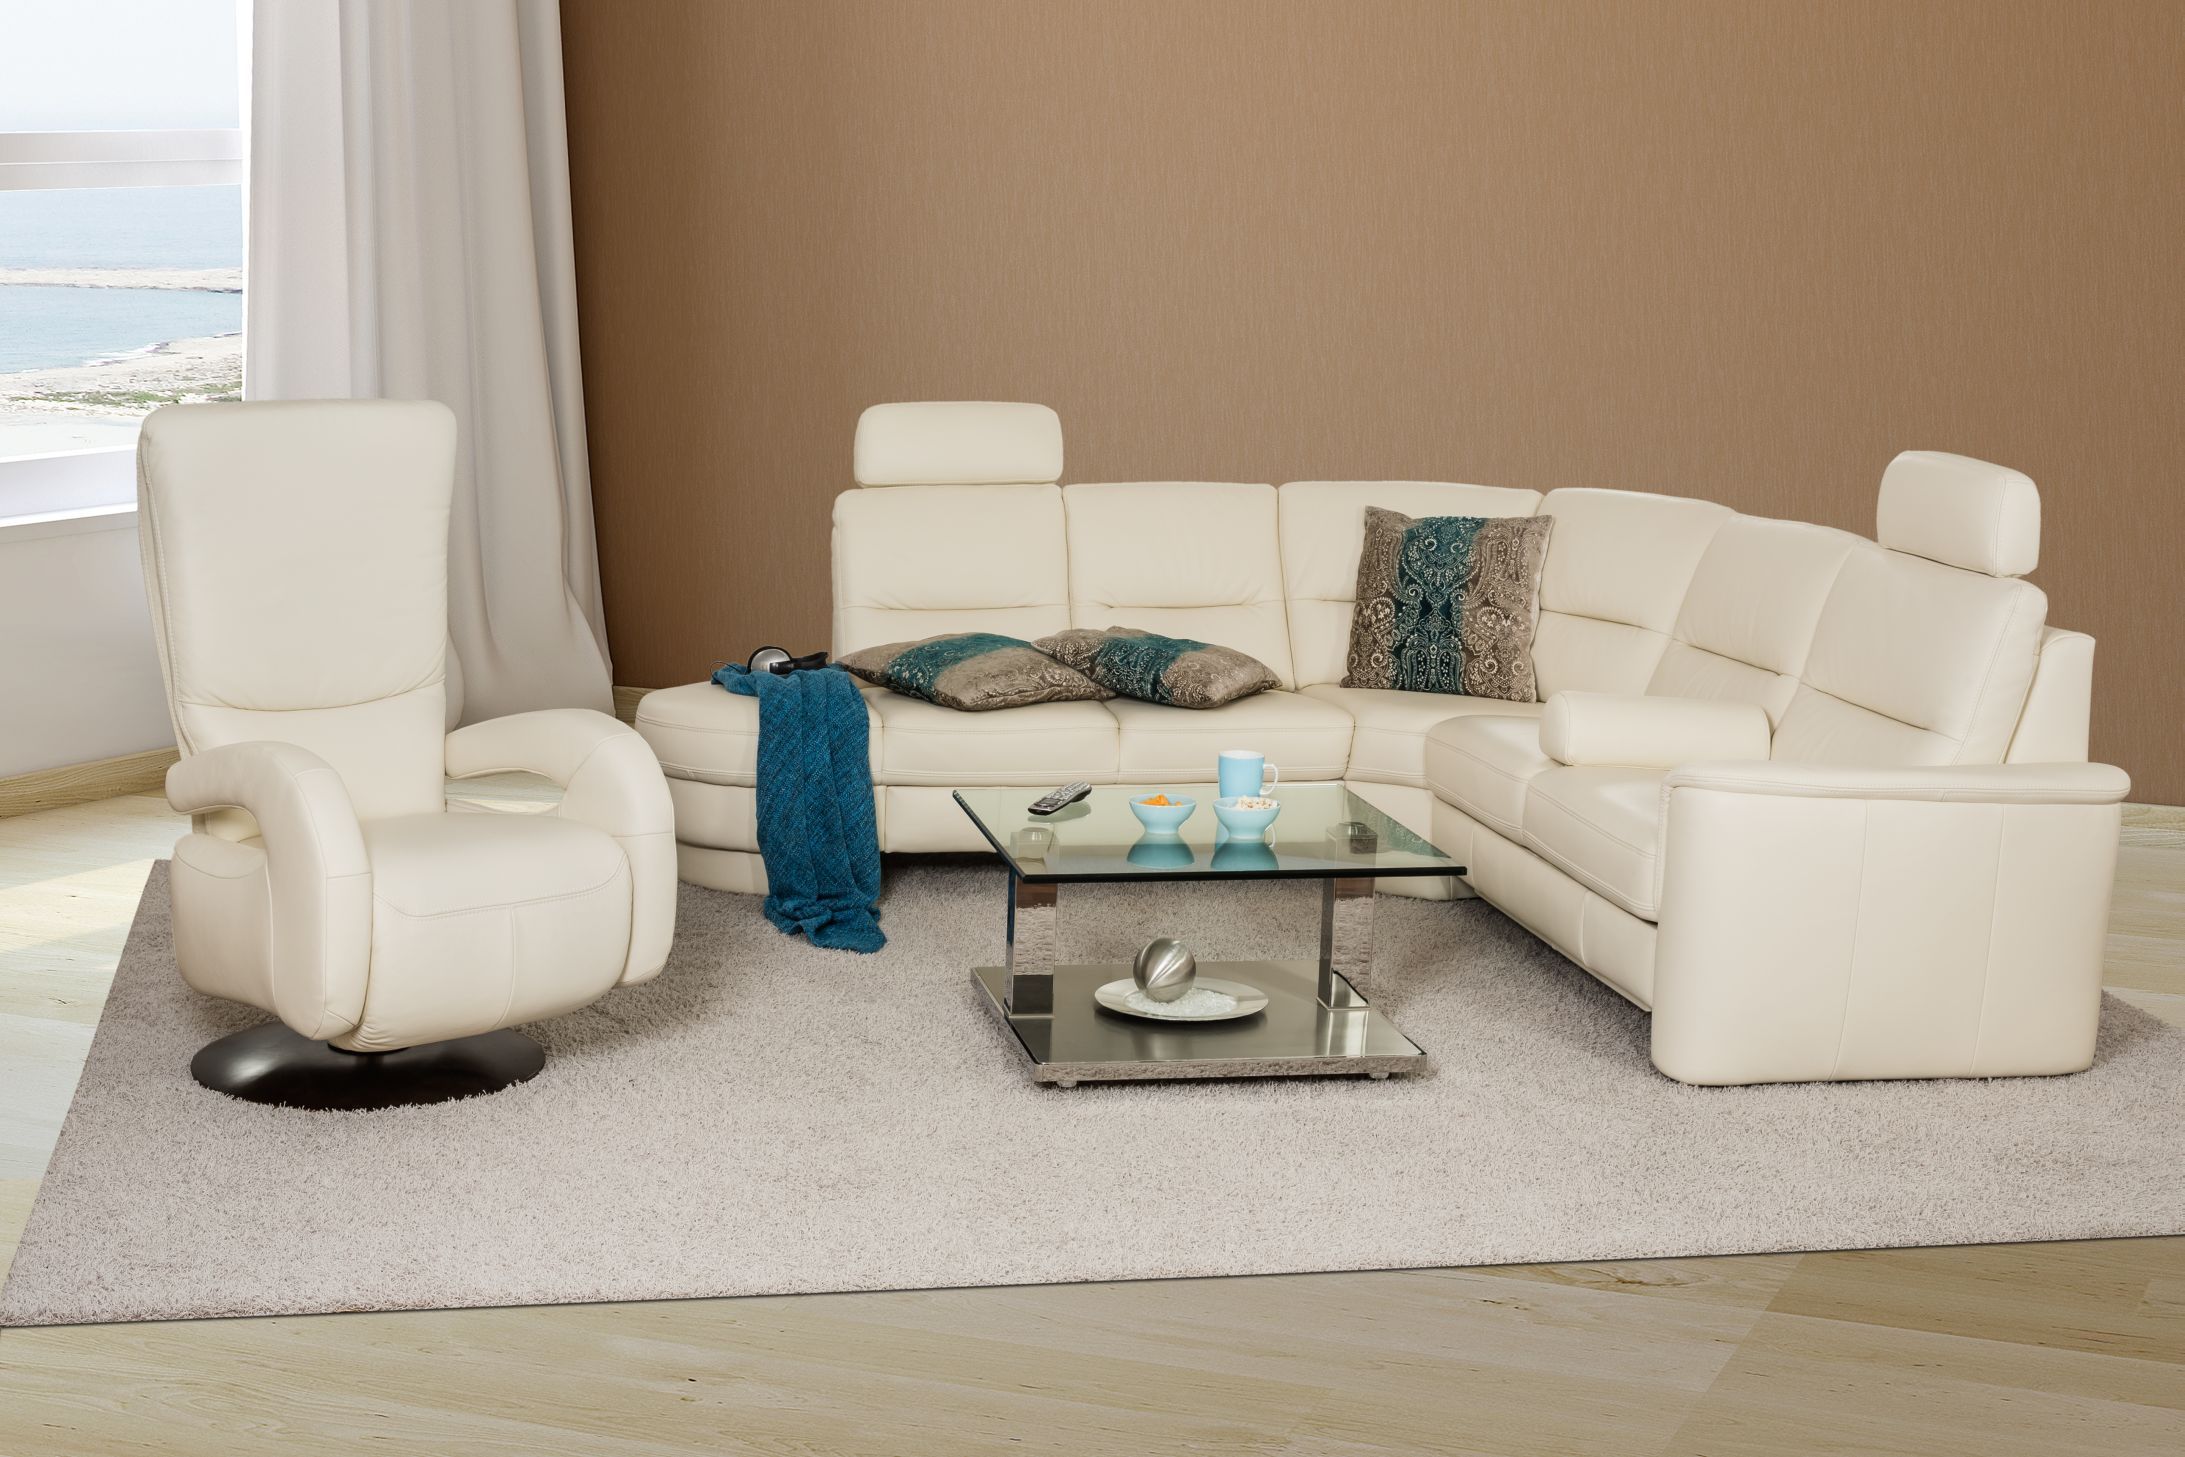  кожаный диван в интерьере: с чем его можно сочетать, как обыграть .